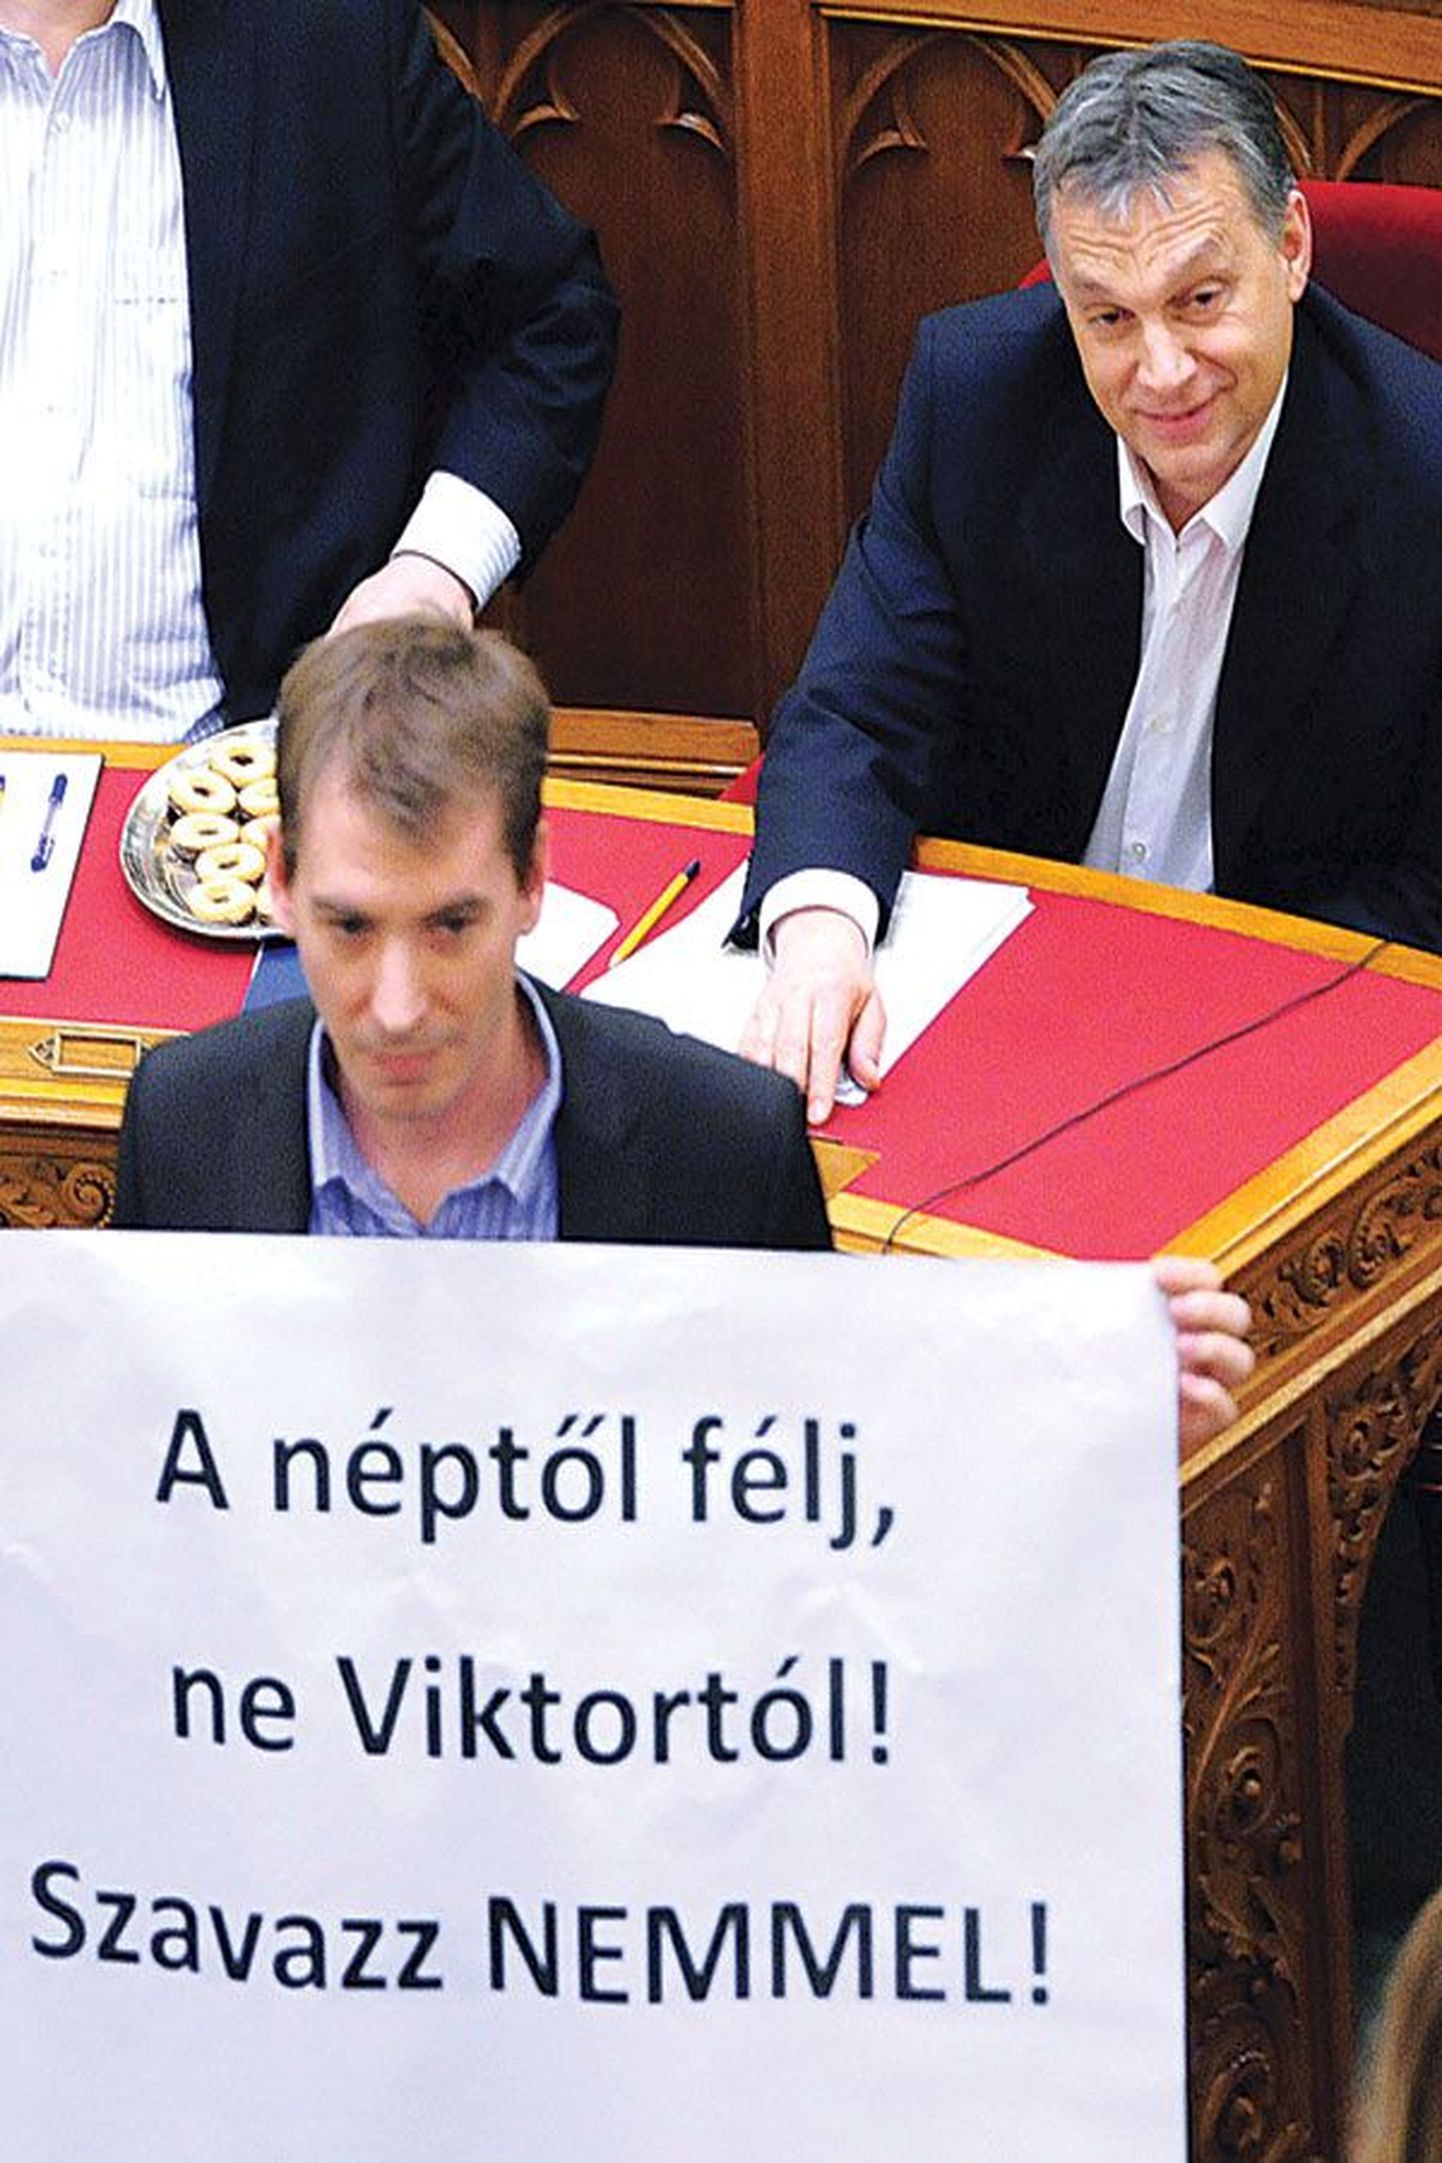 Вынесенный в понедельник из здания парламента плакат, который призывает голосовать против изменения Конституции. Премьер-министр Виктор Орбан (на фото справа) добился желаемых изменений.